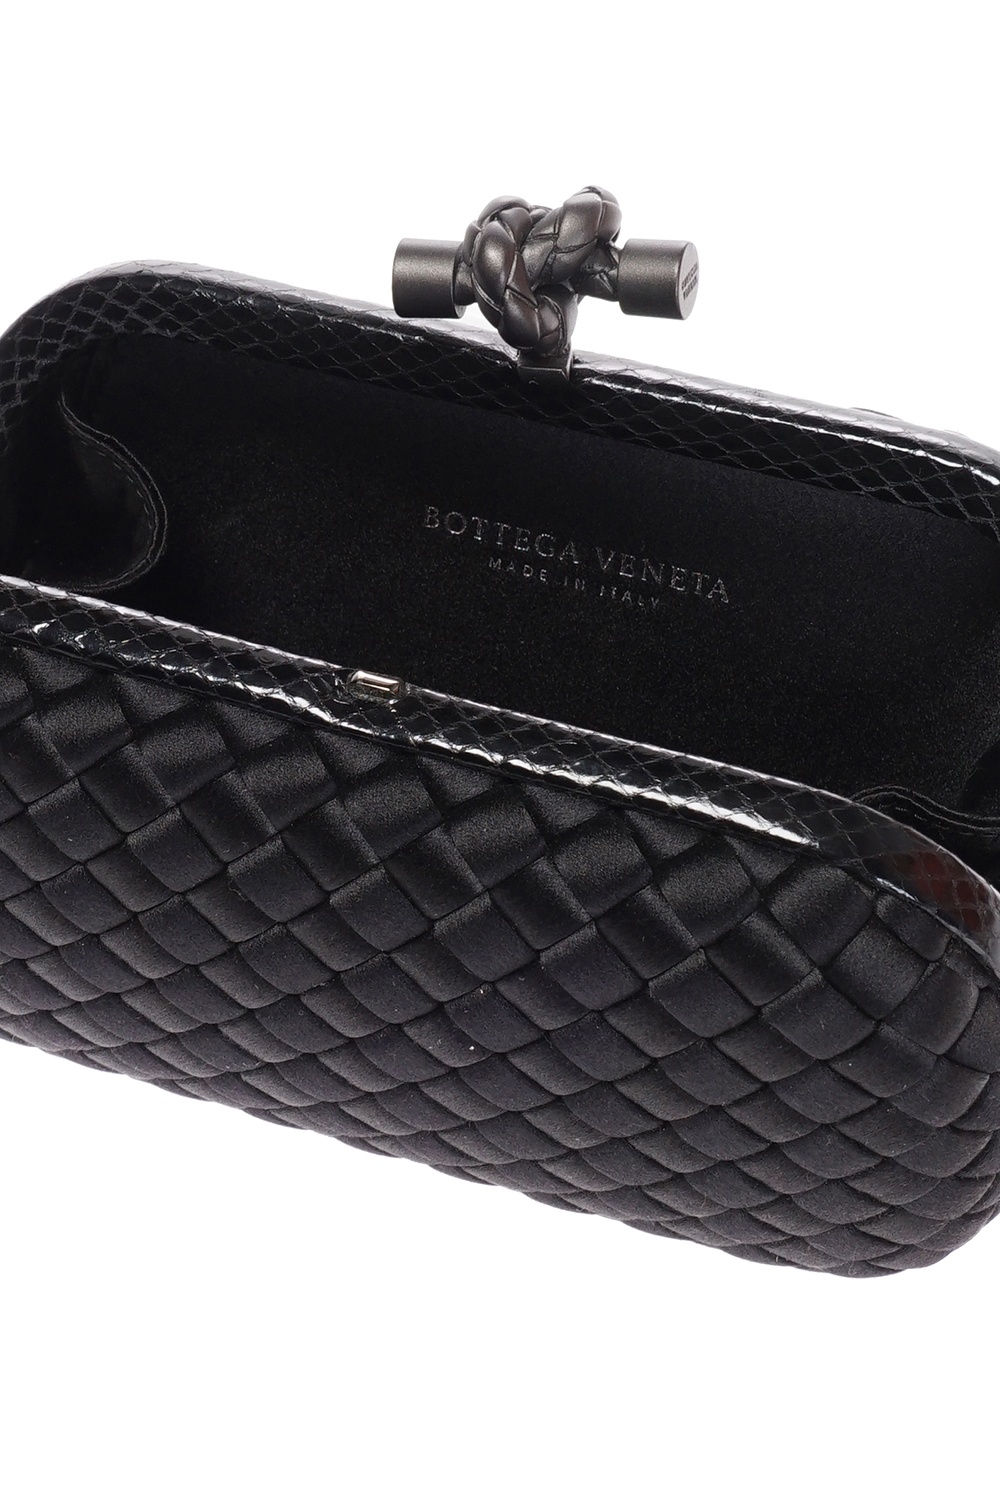 Bottega Veneta 'Knot' Clutch, Women's Bags